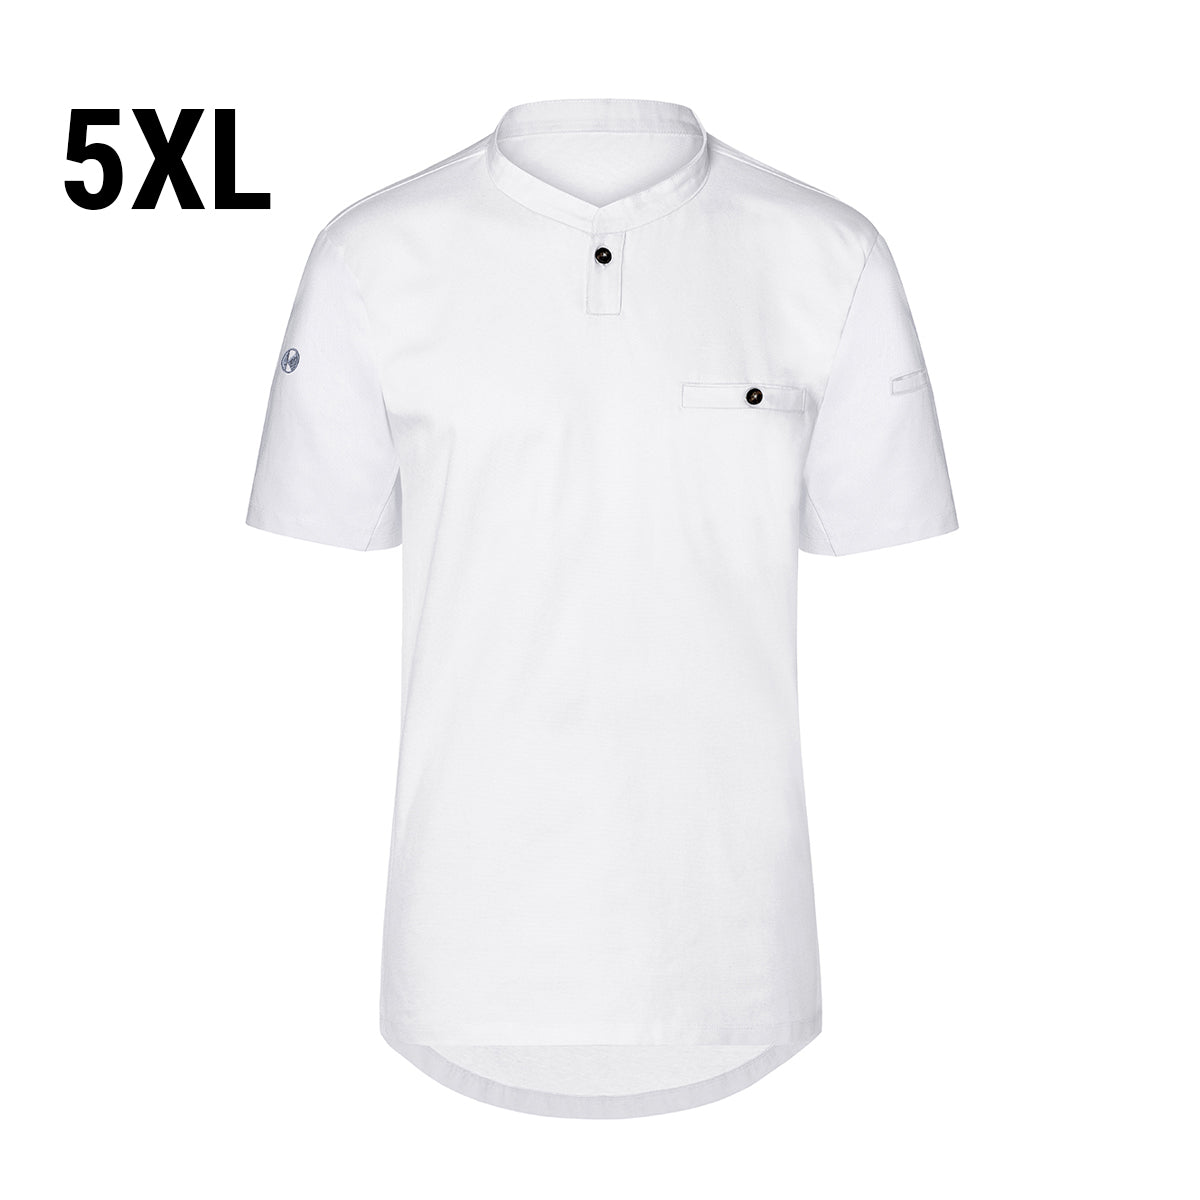 (6 stk) Karlowsky - Kortærmet arbejdsskjorte til herrer Performance - Hvid - Størrelse: 5XL